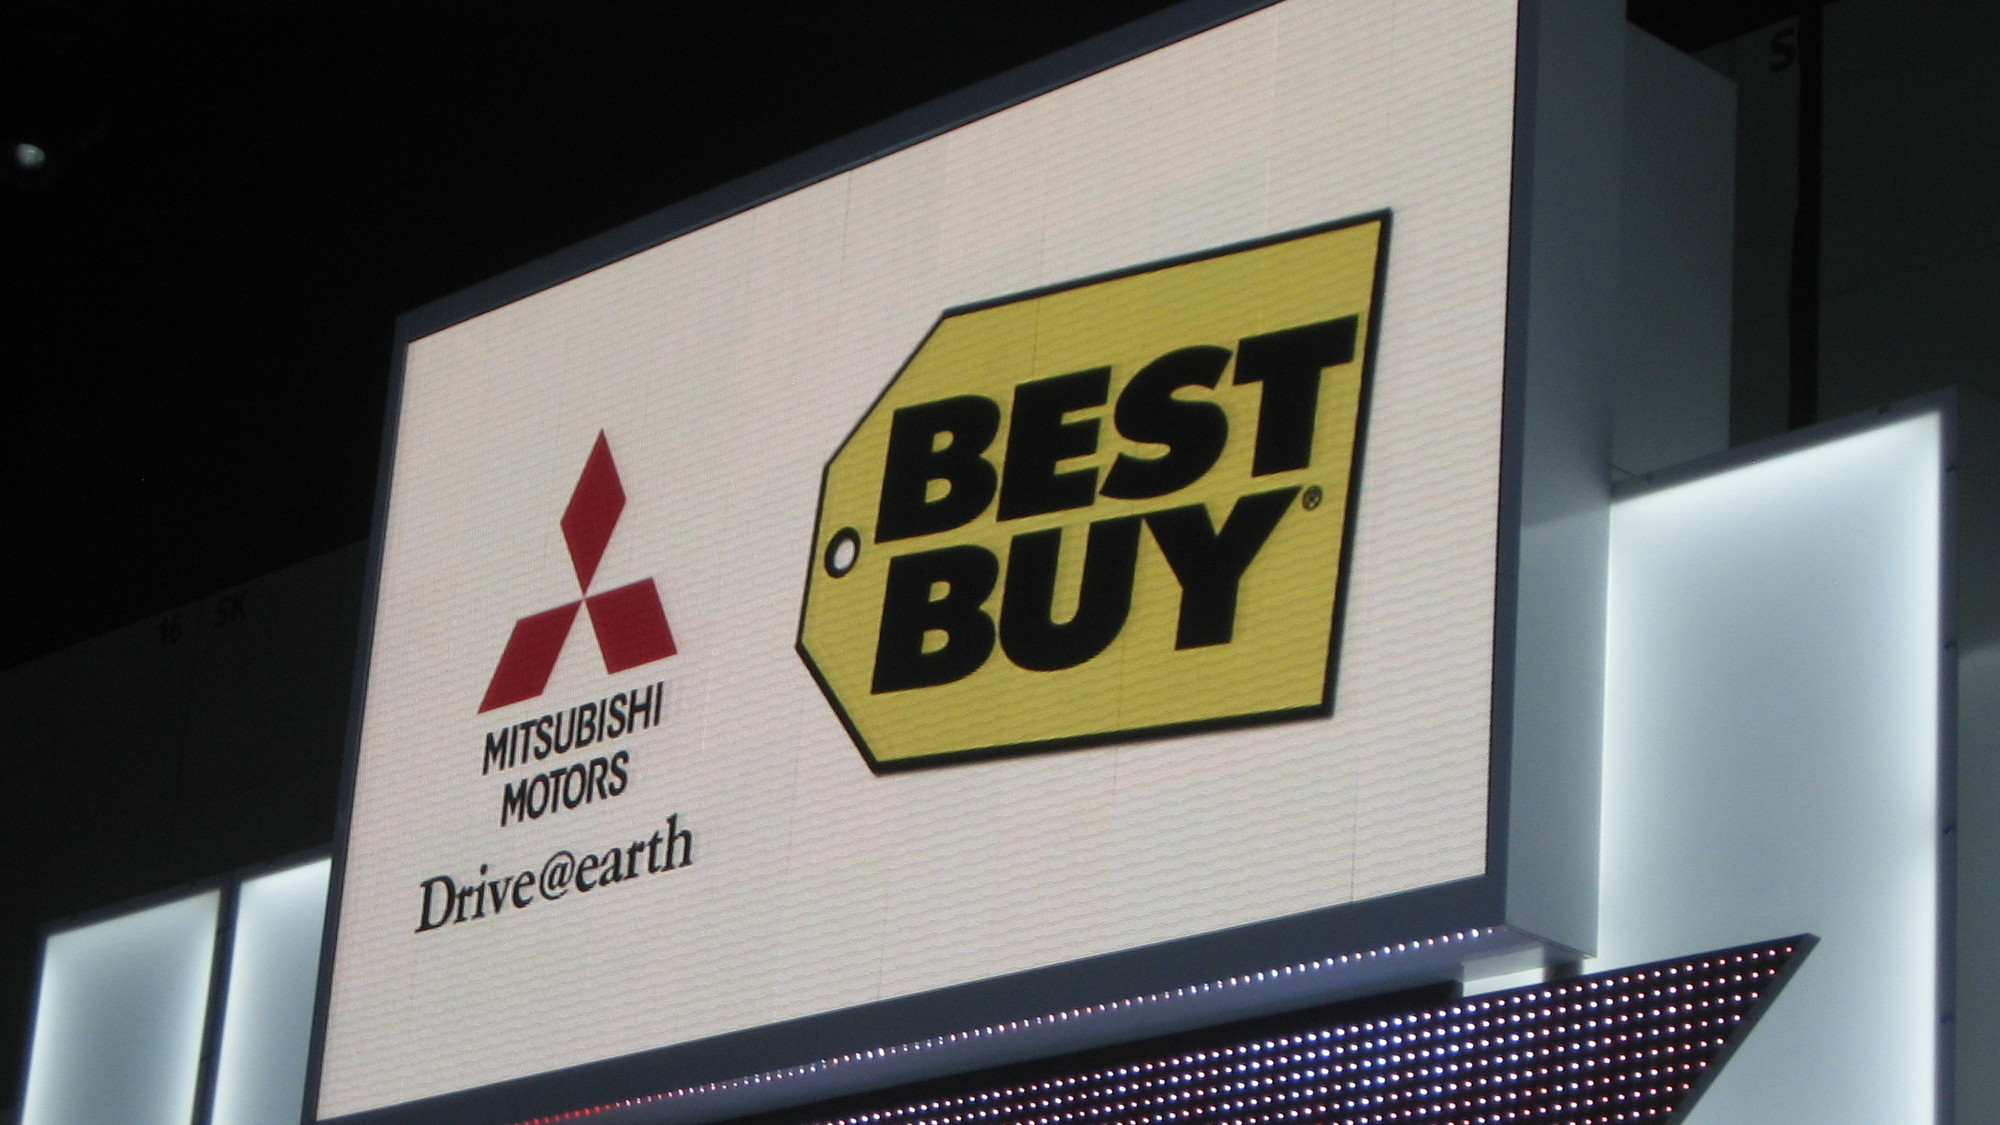 Mitsubishi - Best Buy